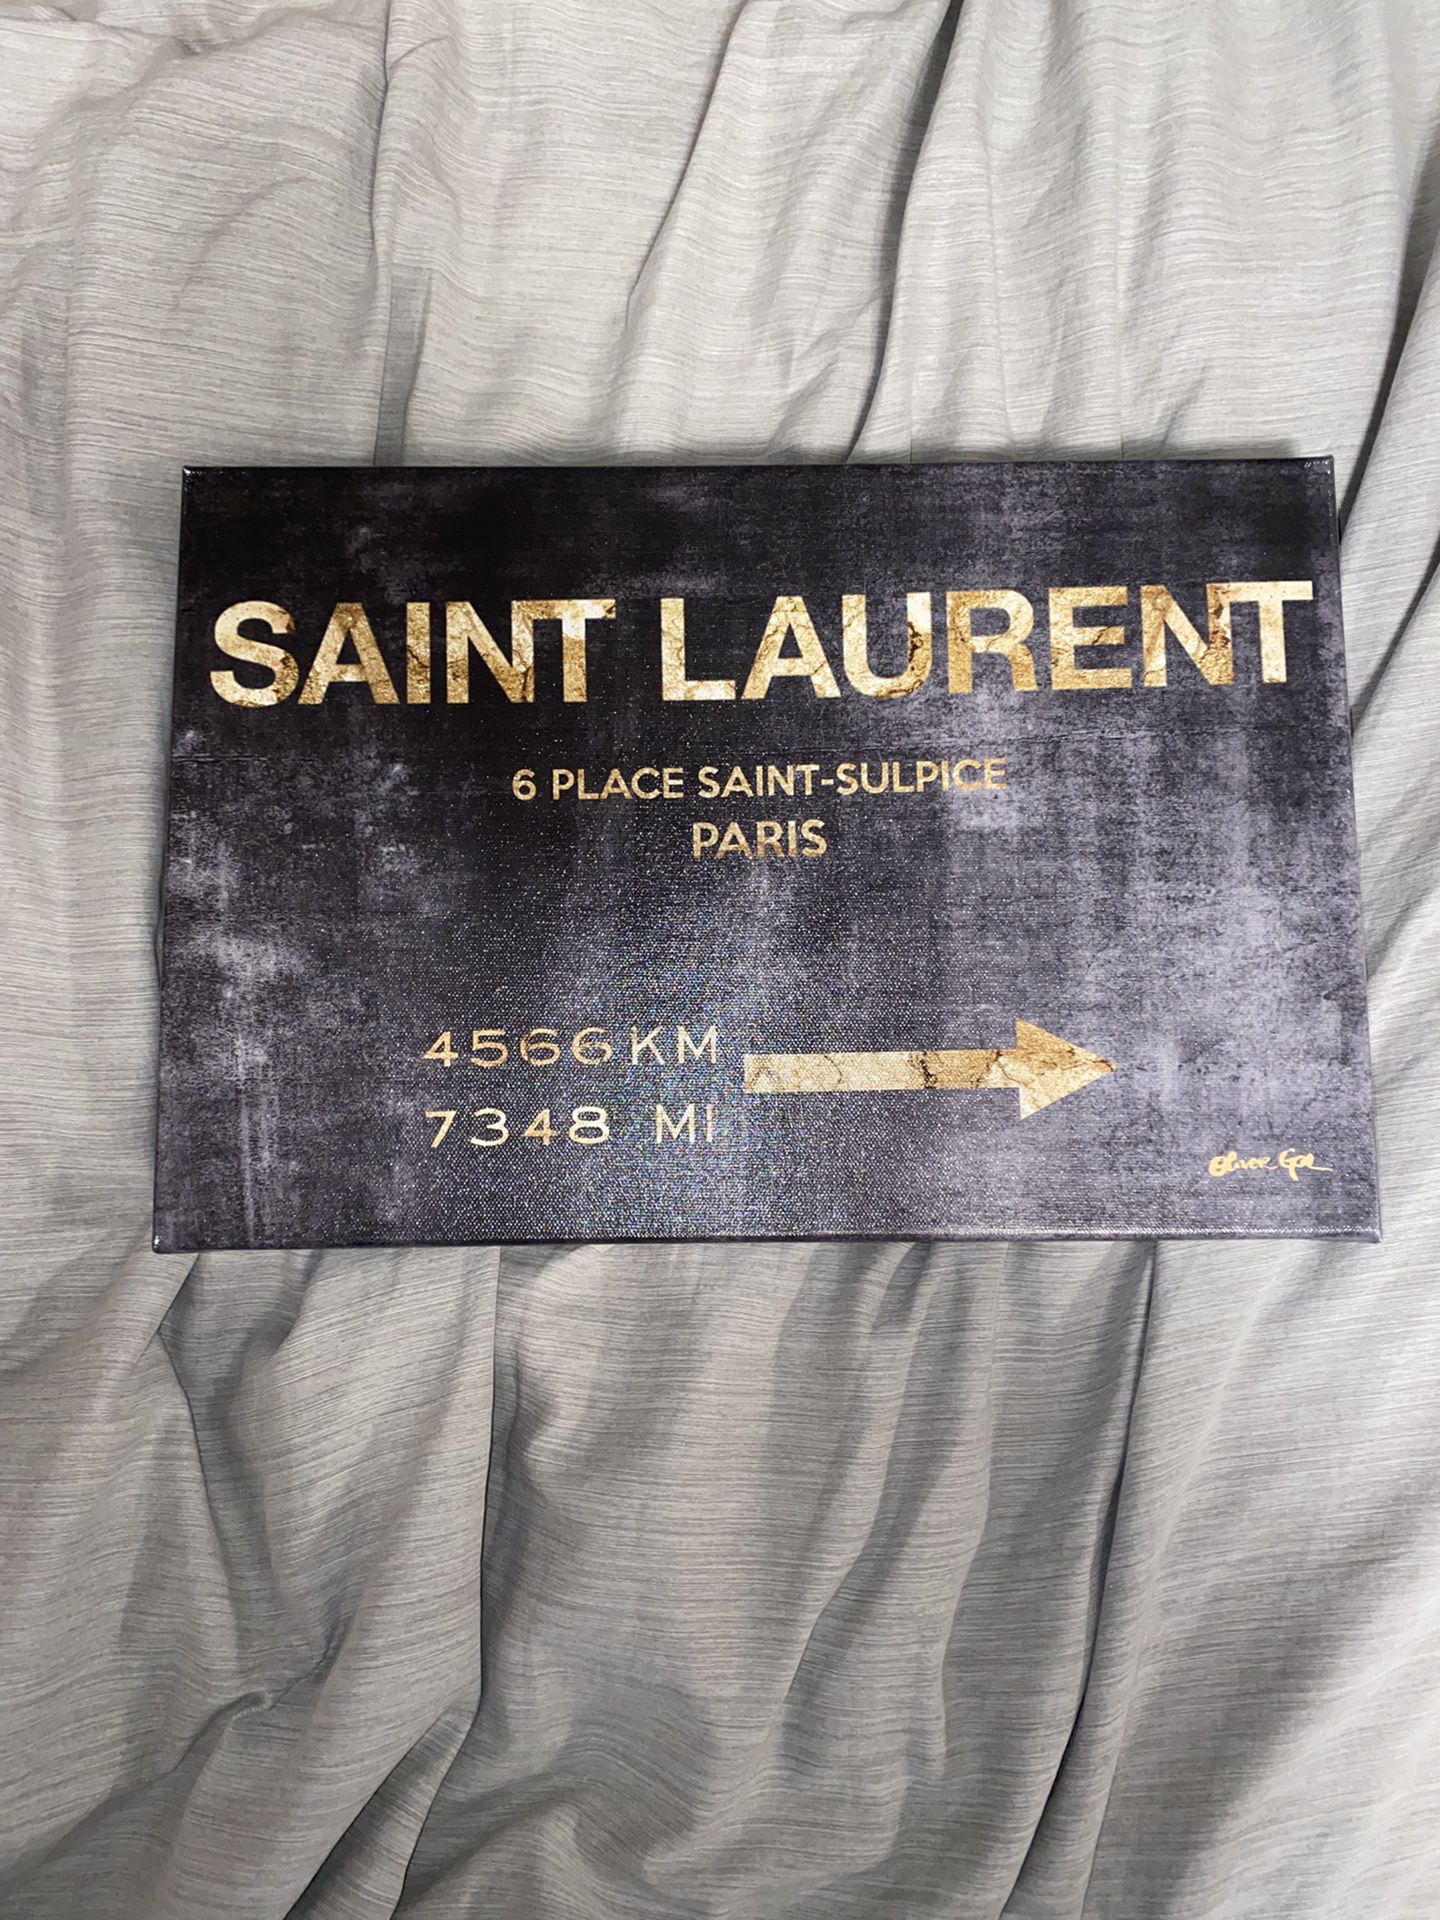 Saint Laurent Canvas